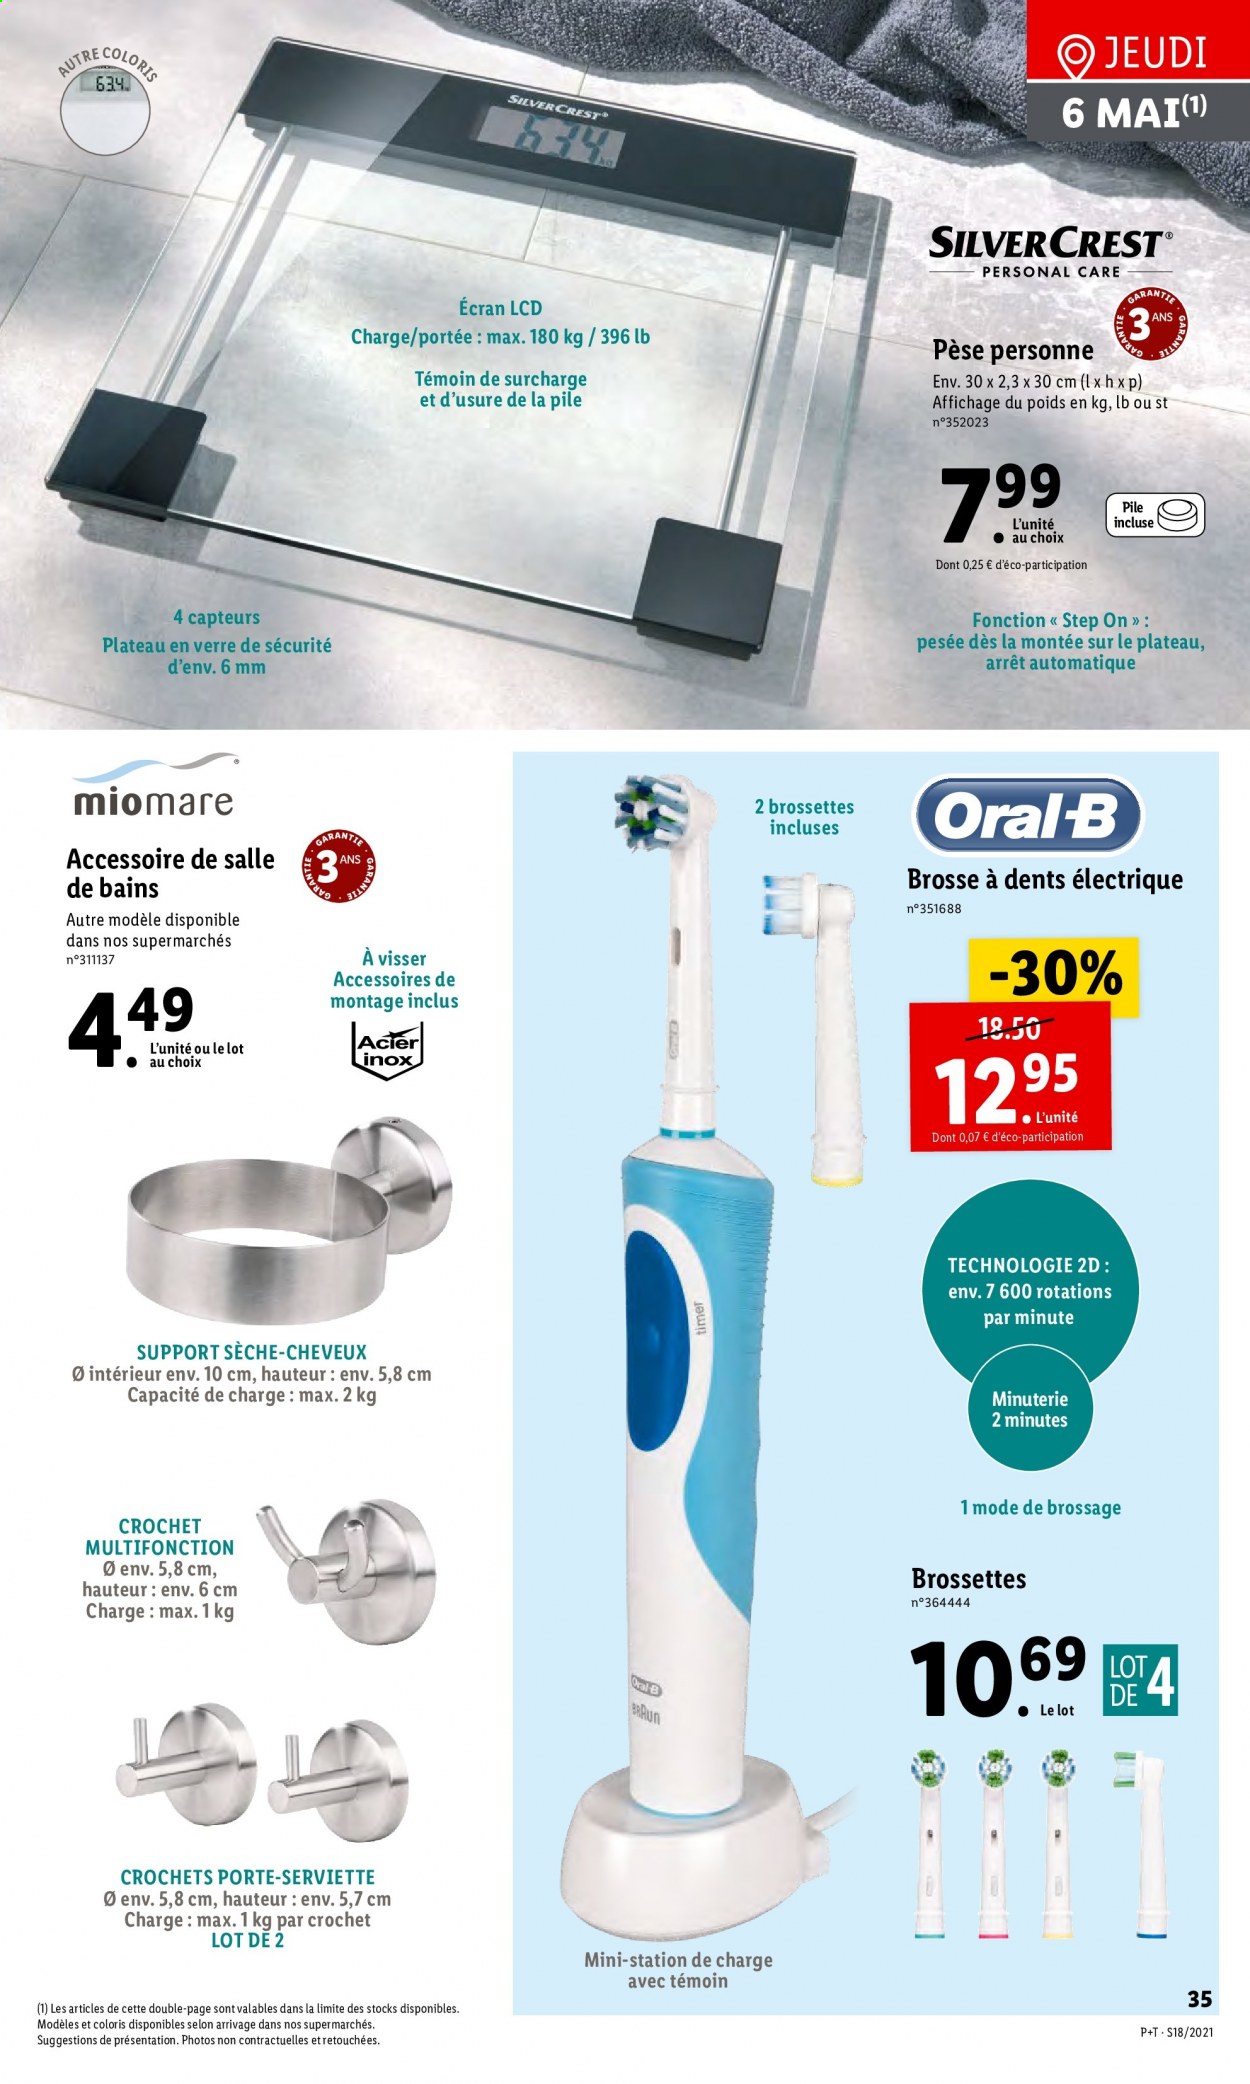 thumbnail - Catalogue Lidl - 05/05/2021 - 11/05/2021 - Produits soldés - Oral-b, brosse à dents, SilverCrest, brosse à dents électrique, sèche-cheveux. Page 39.